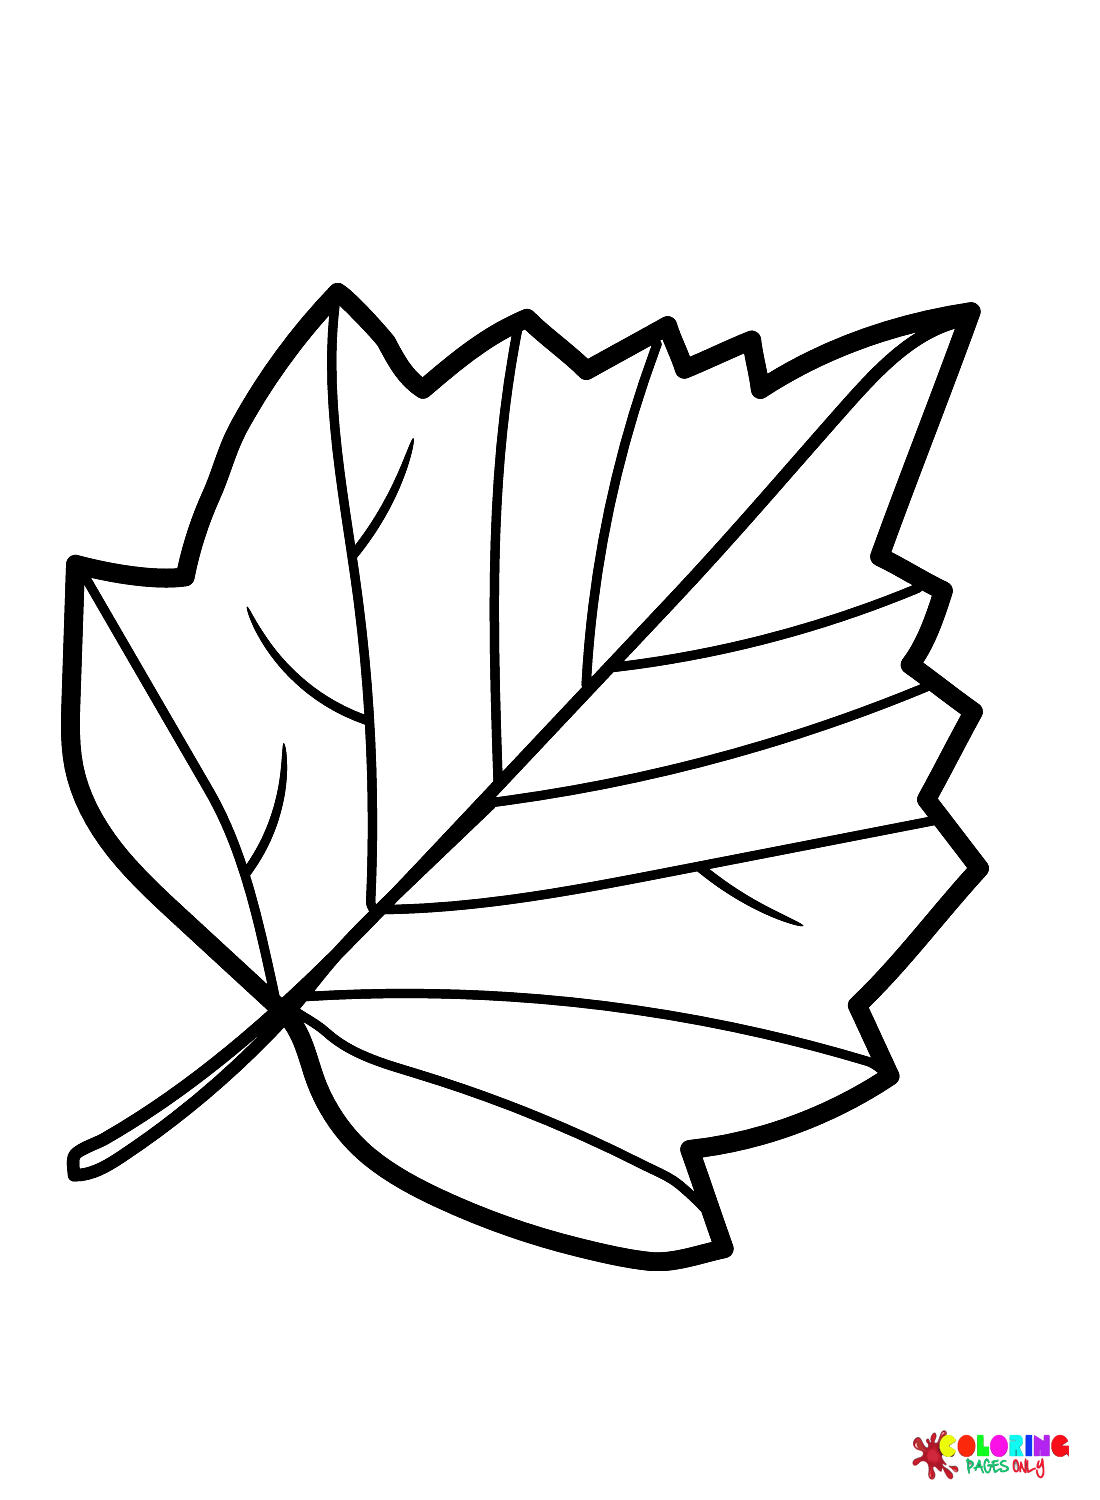 Página para colorir folha de espinheiro